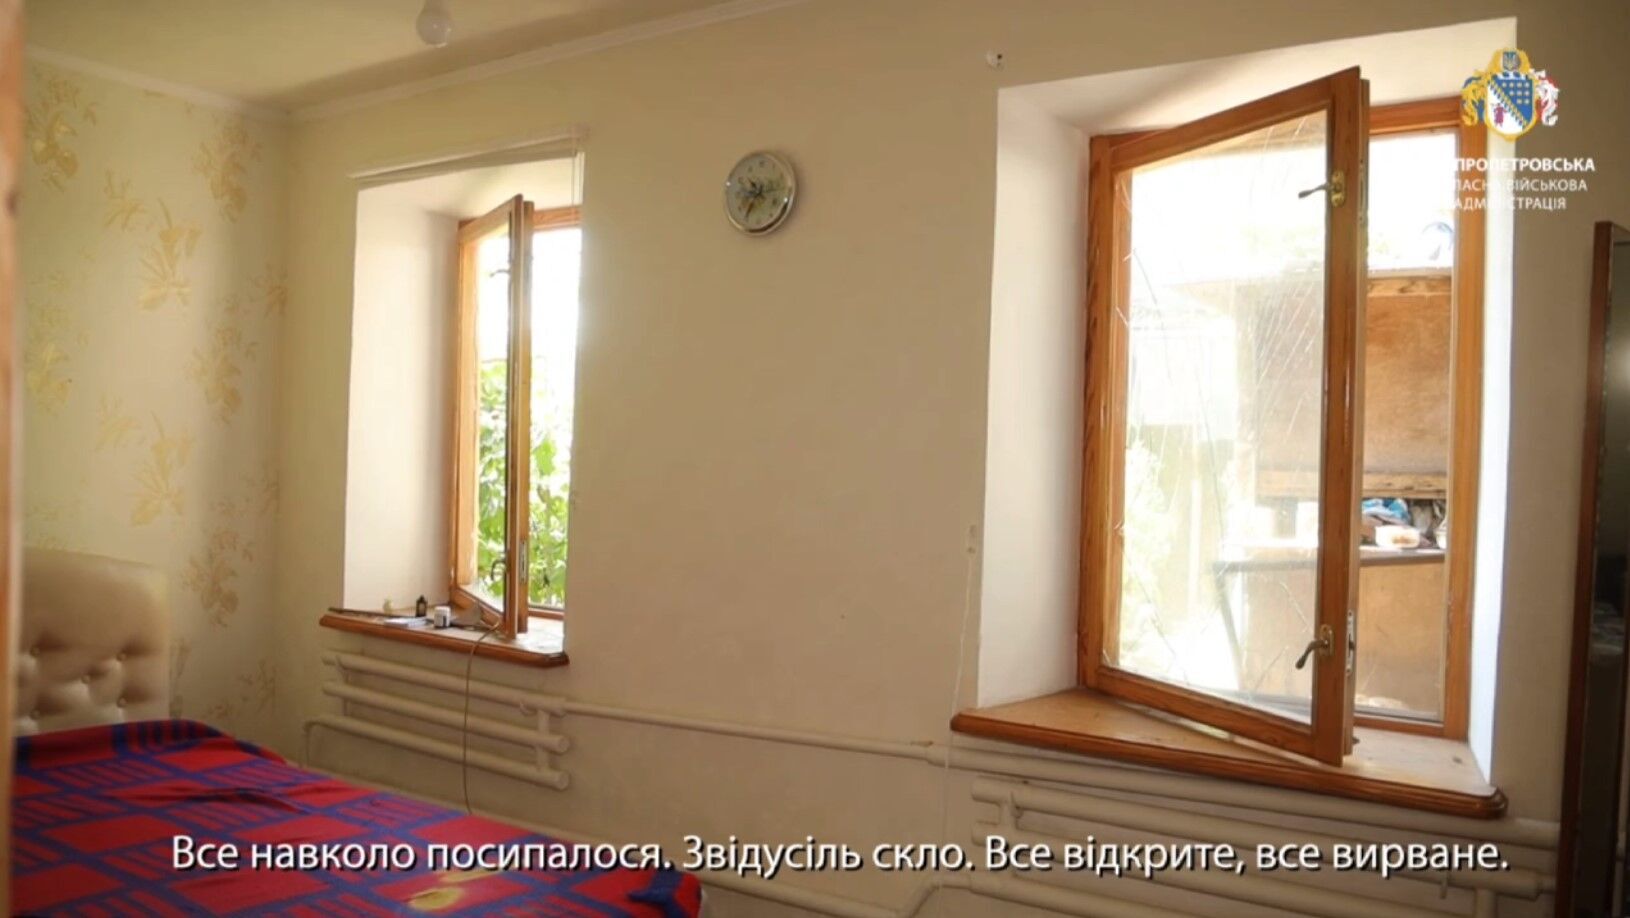 "До сих пор трясет": жители Днепра рассказали о моменте российской атаки. Видео